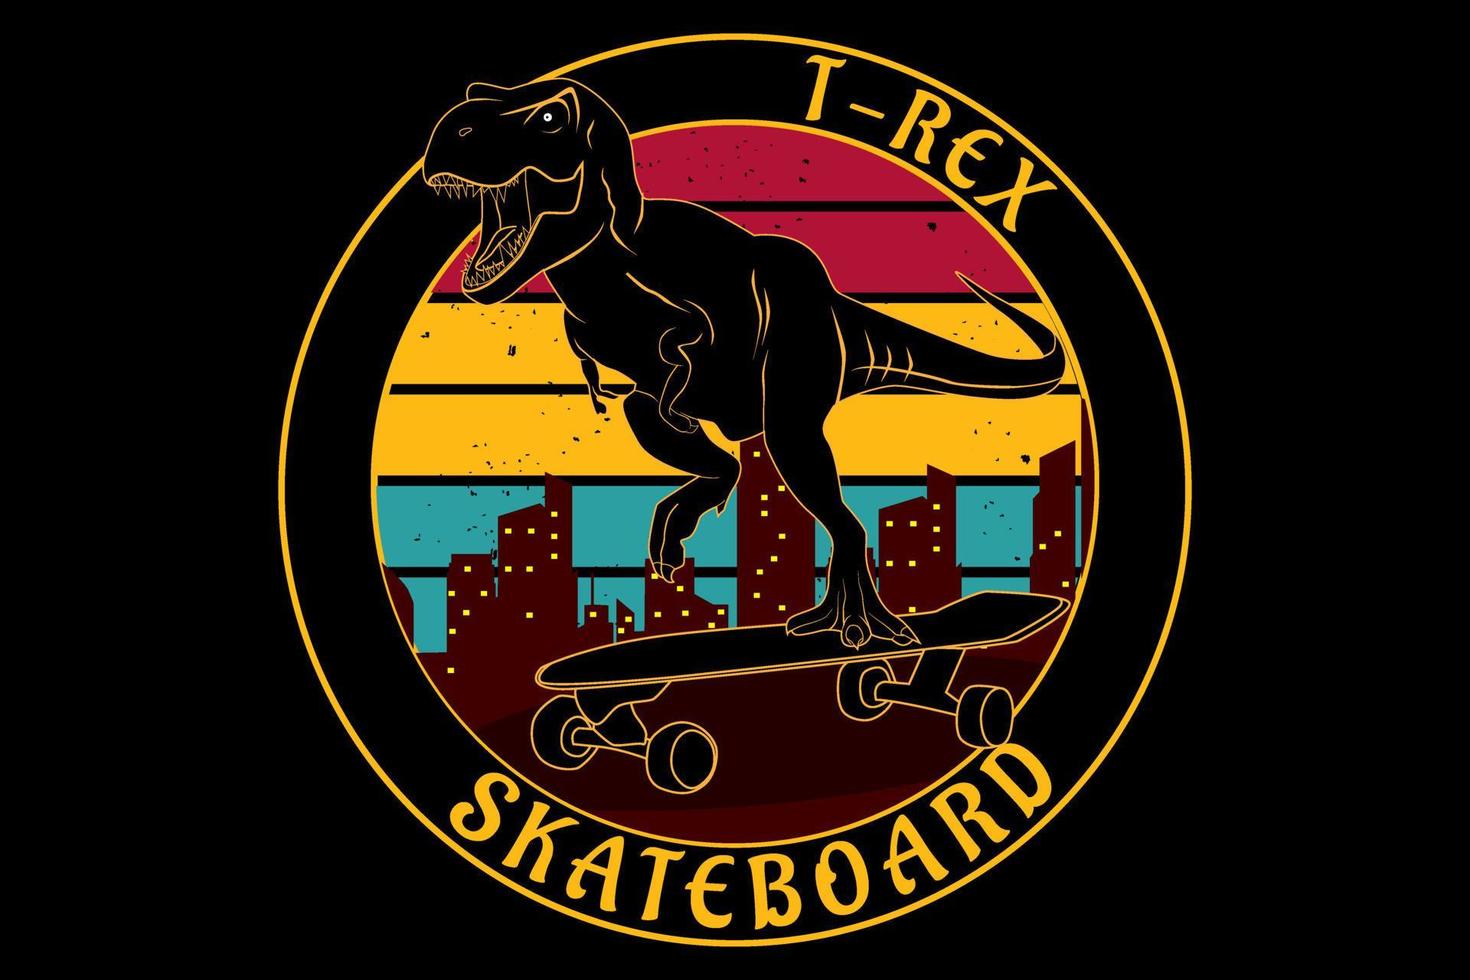 t rex skateboard diseño retro vintage vector